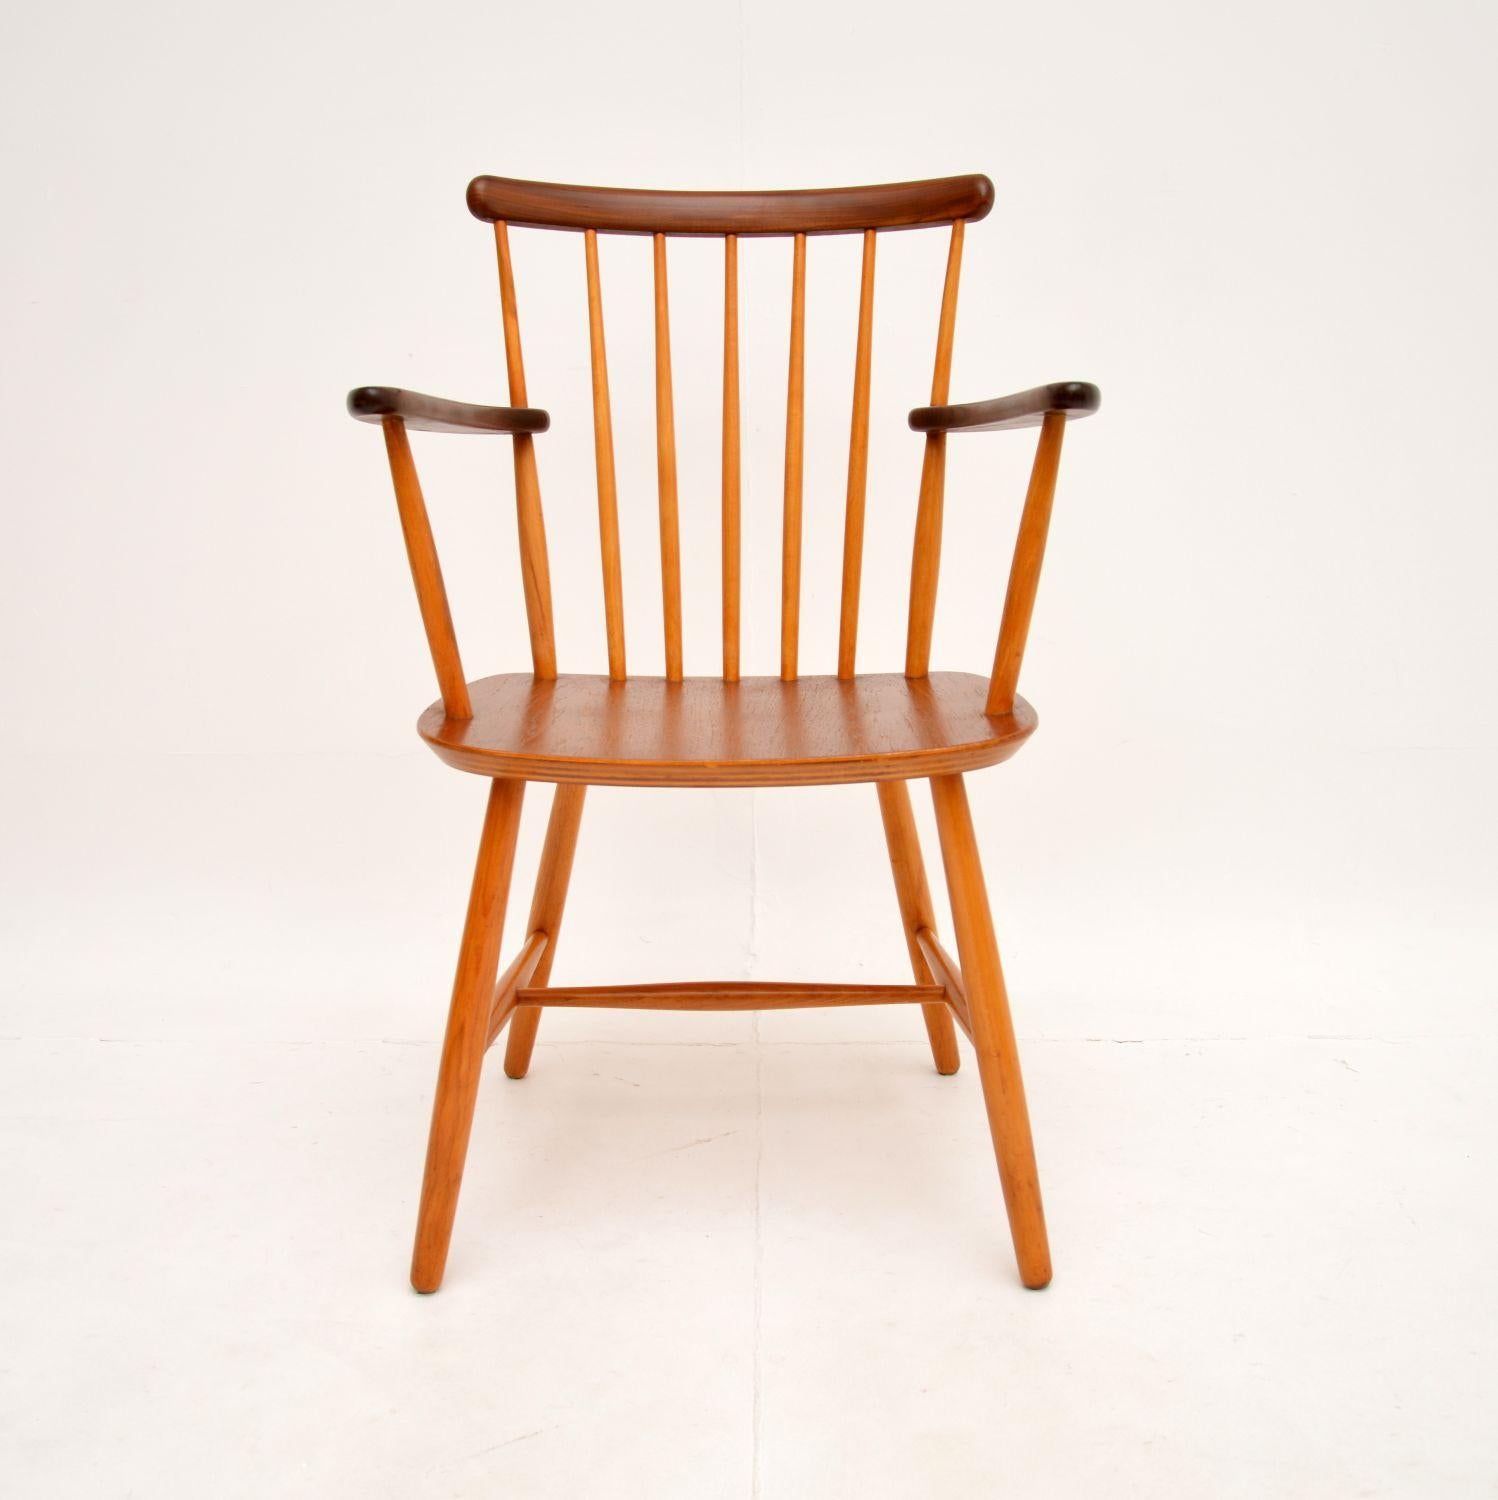 Une chaise de bureau vintage en teck danois, élégante et confortable. Fabriqué par Billund Stolefabrik, il date des années 1960.

Il est d'excellente qualité et son design est très élégant. Elle est parfaite pour être utilisée comme chaise de bureau